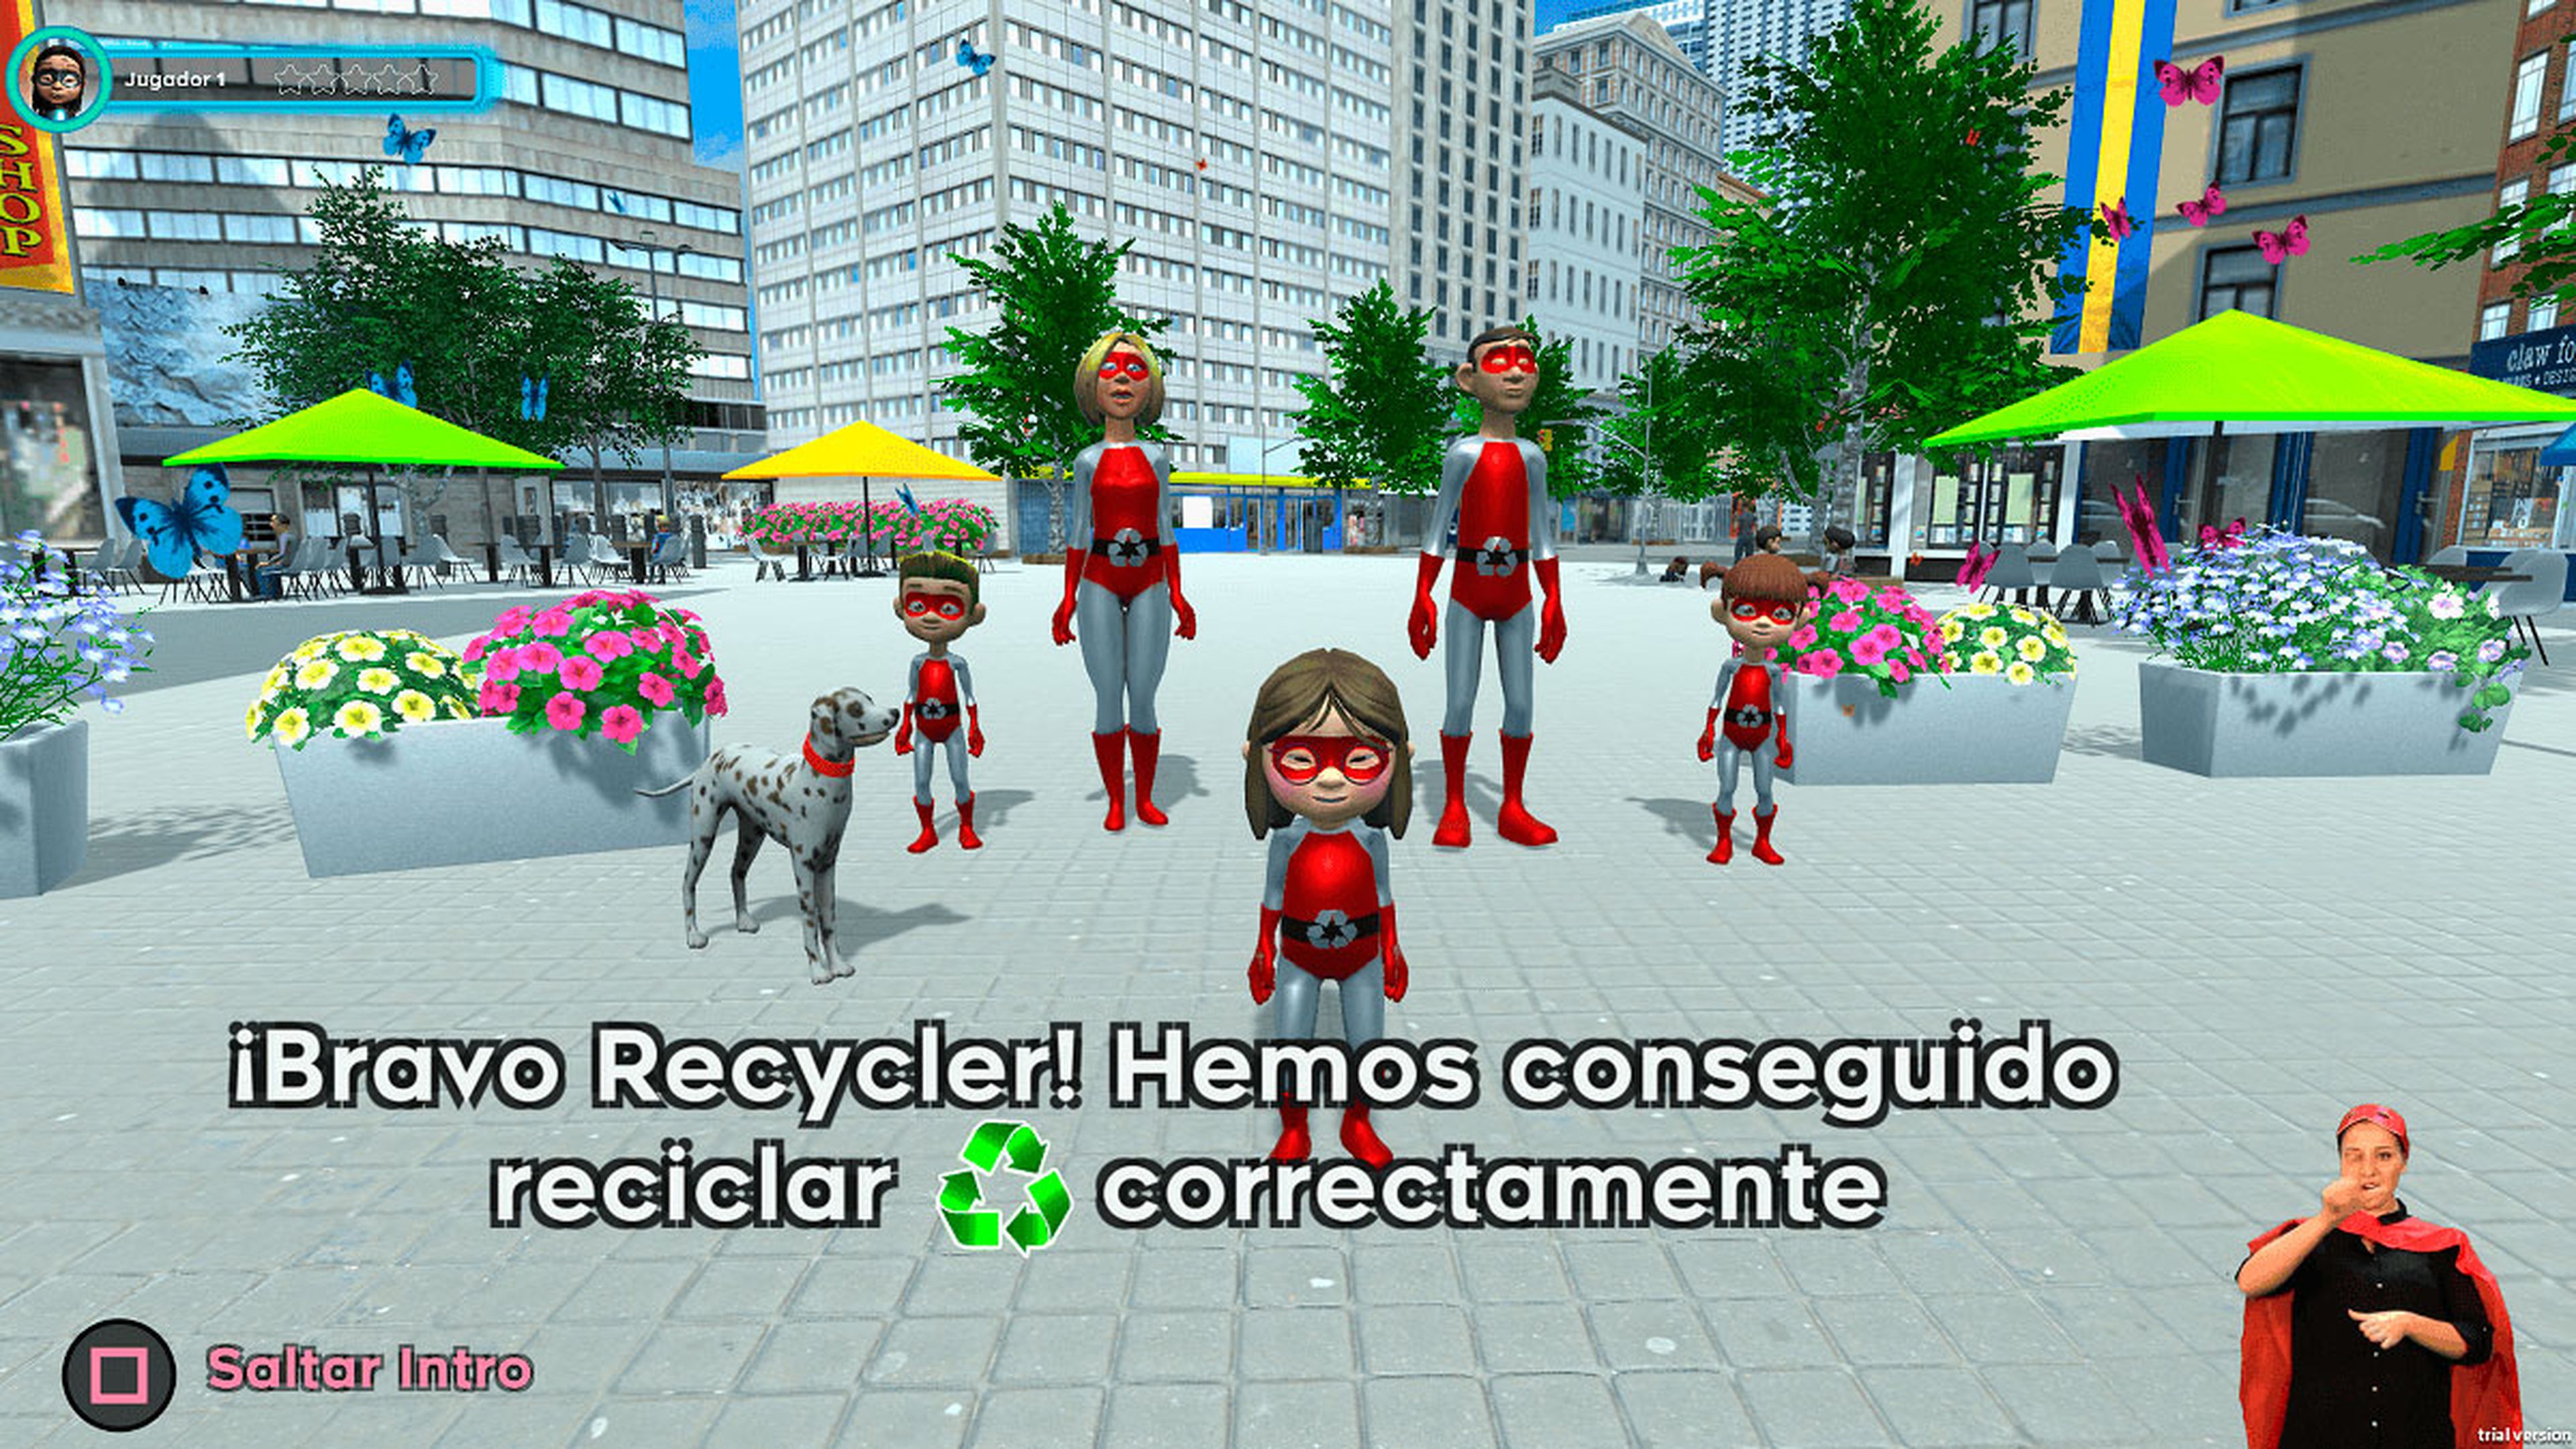 The Recycling Heroes incluye la opción de seleccionar lenguaje de signos